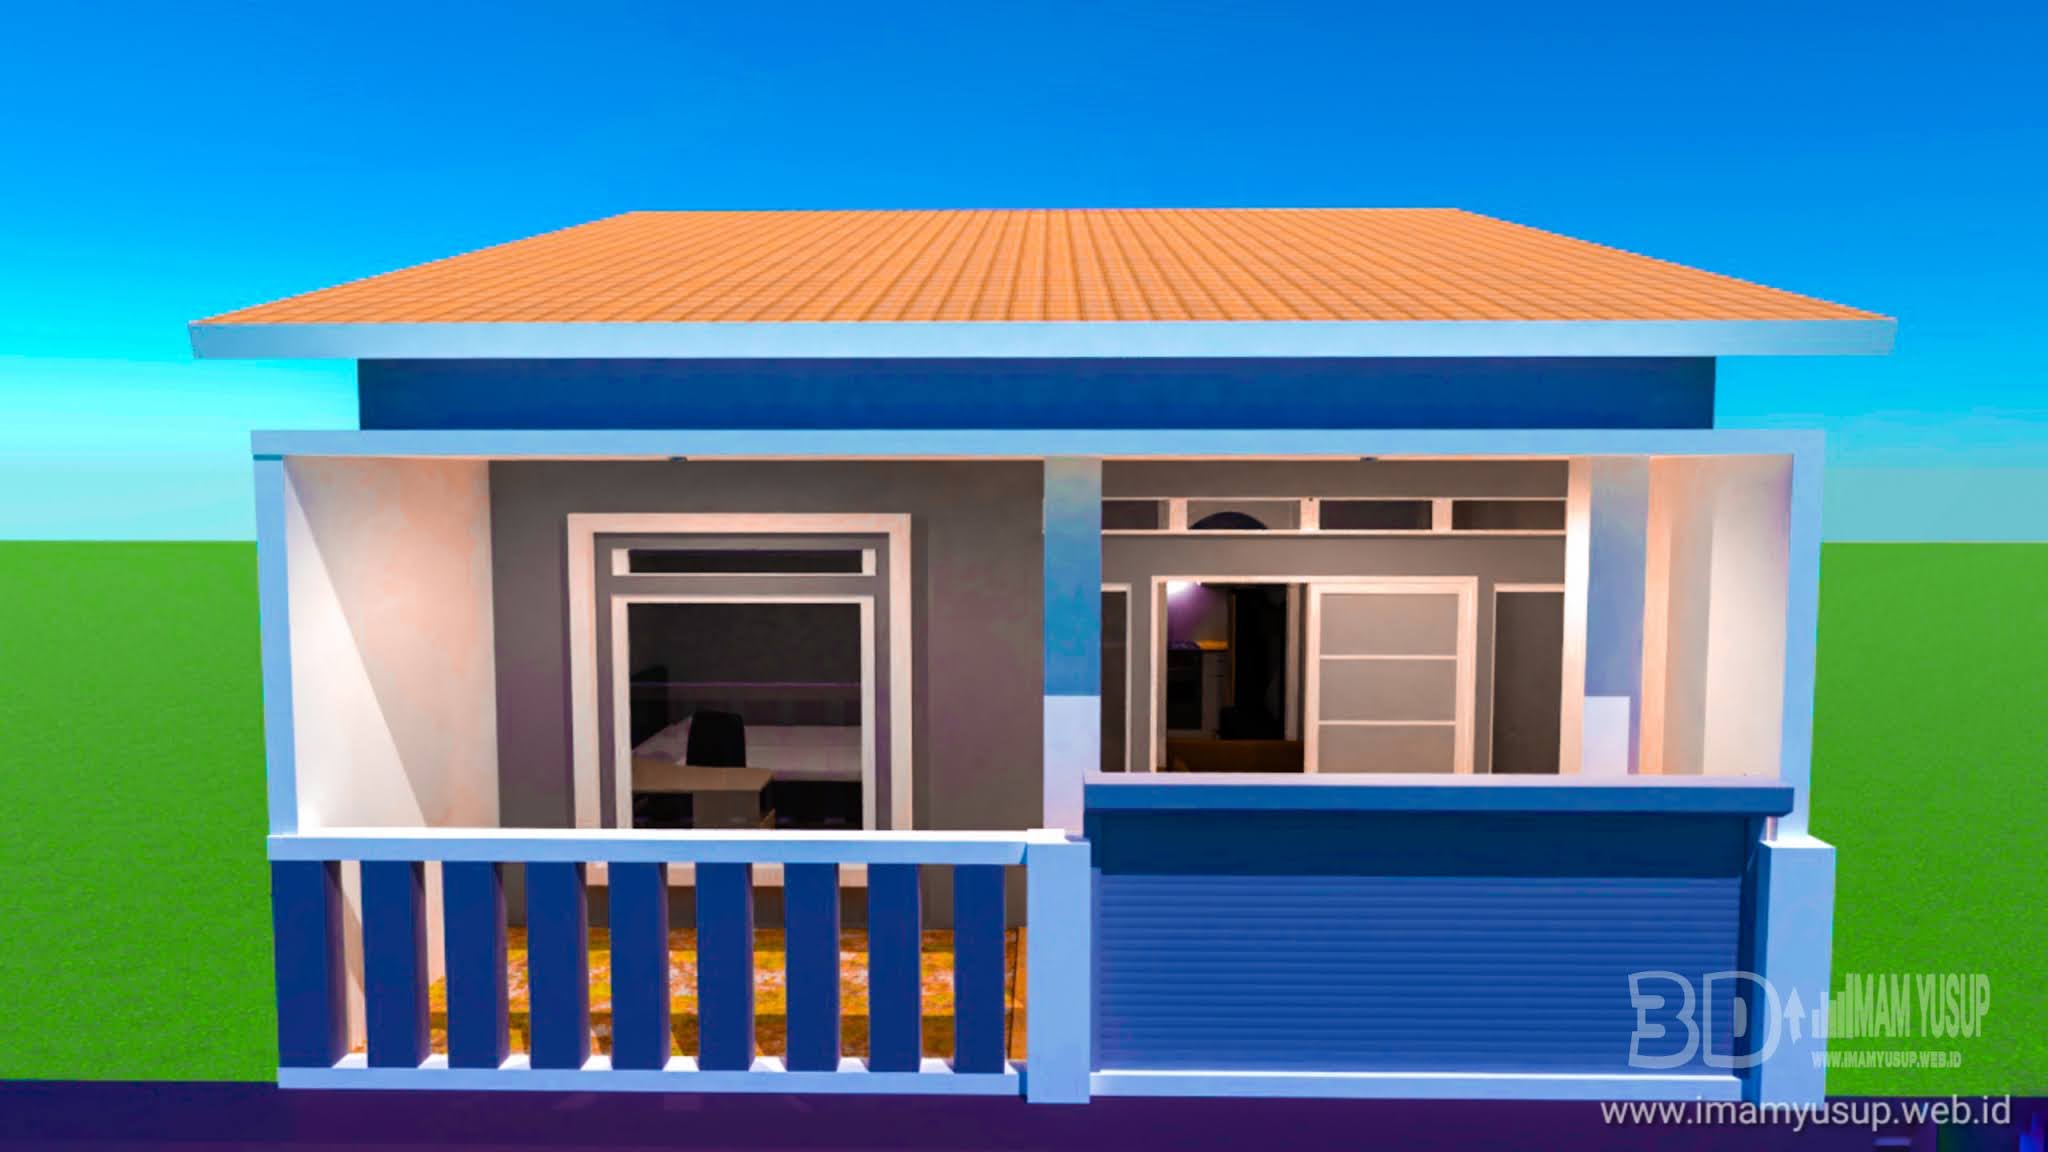 Desain Rumah Minimalis Ukuran Panjang 8 Meter Lebar 6 Meter Home Design Imam Yusup